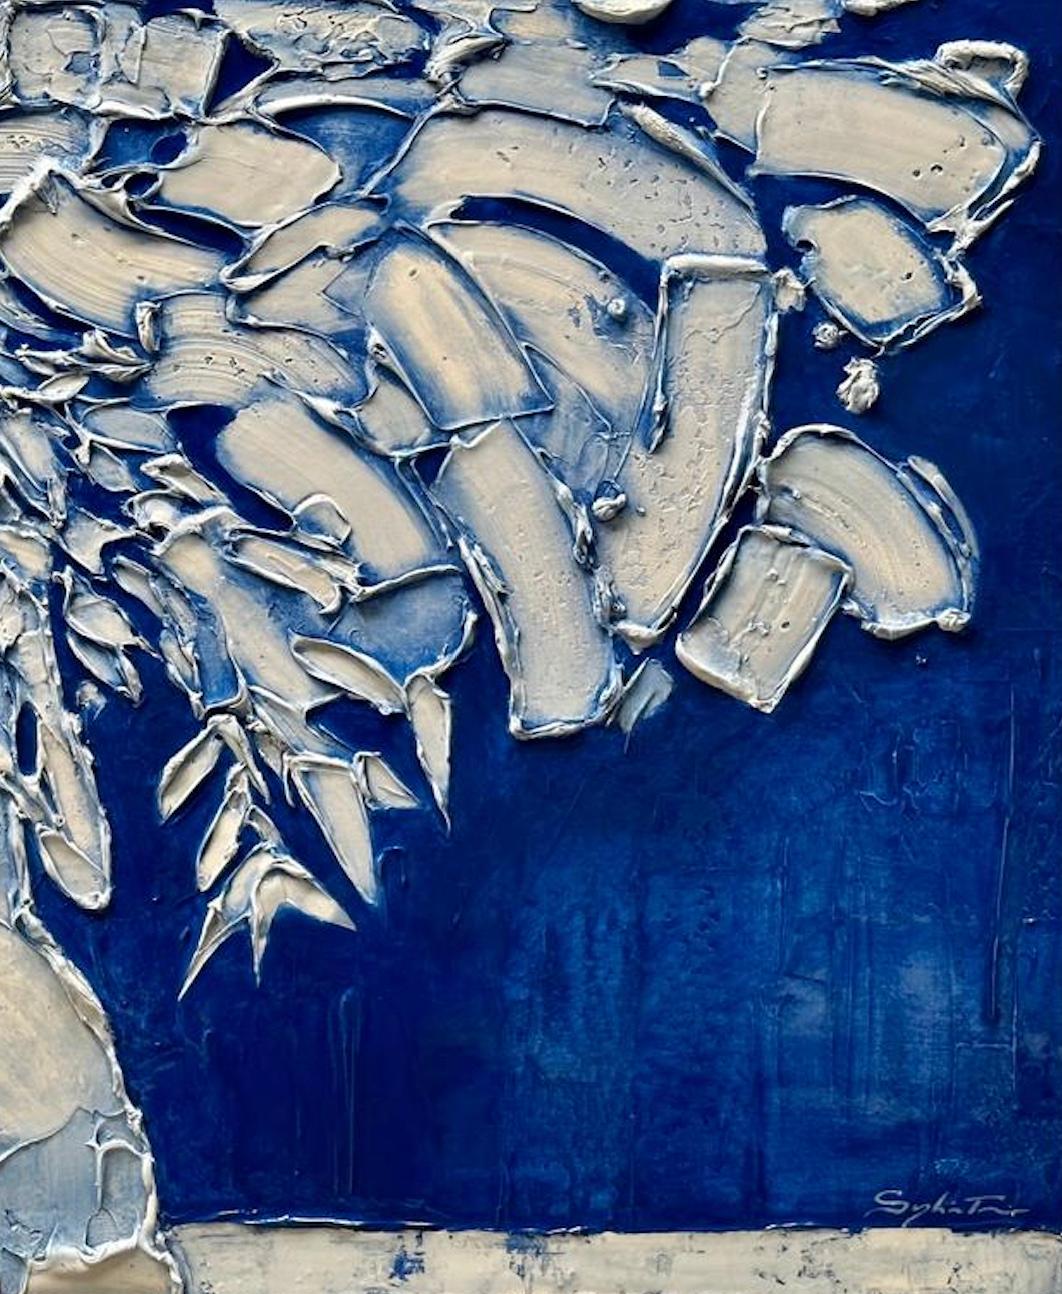 Au Jardin Des Oiseaux Bleus - Painting by Sylvain Tremblay